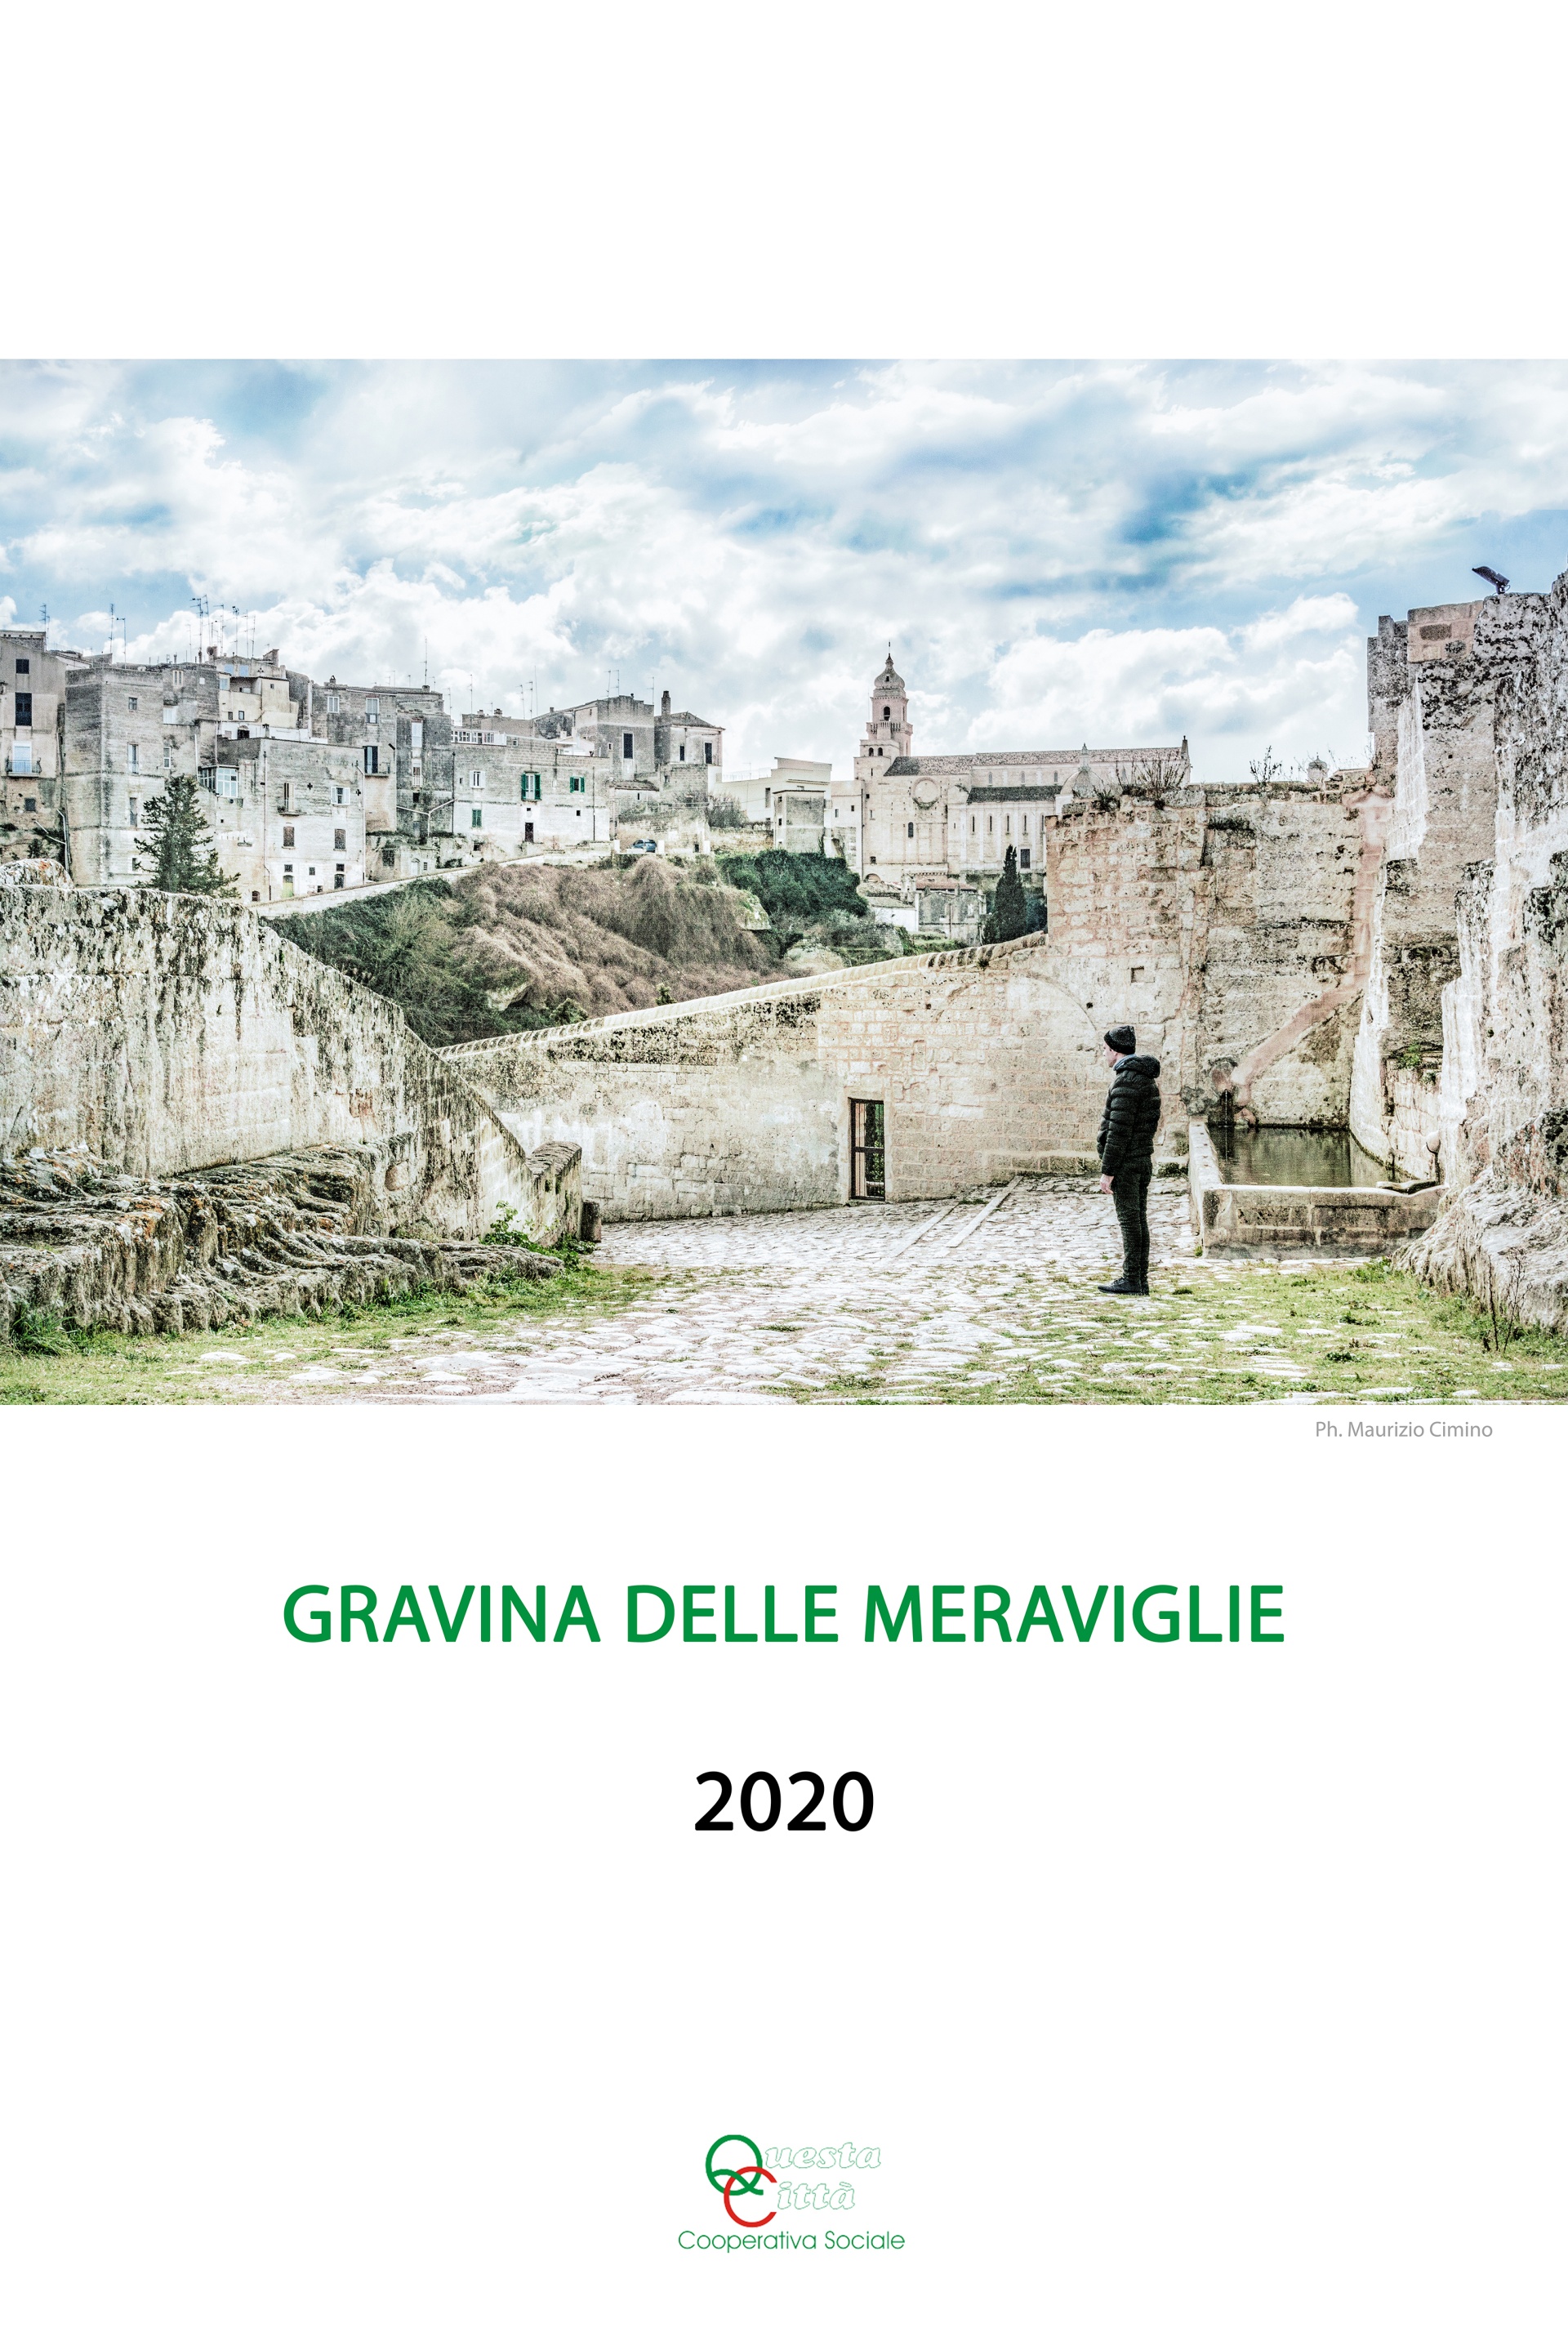 GRAVINA DELLE MERAVIGLIE Calendario 2020, Gravina in Puglia, un concentrato di storia, culture e bellezze paesaggistiche, raccontata attraverso lo sguardo di chi con curiosità, ha voluto scoprirla o riscoprirla per mezzo di un